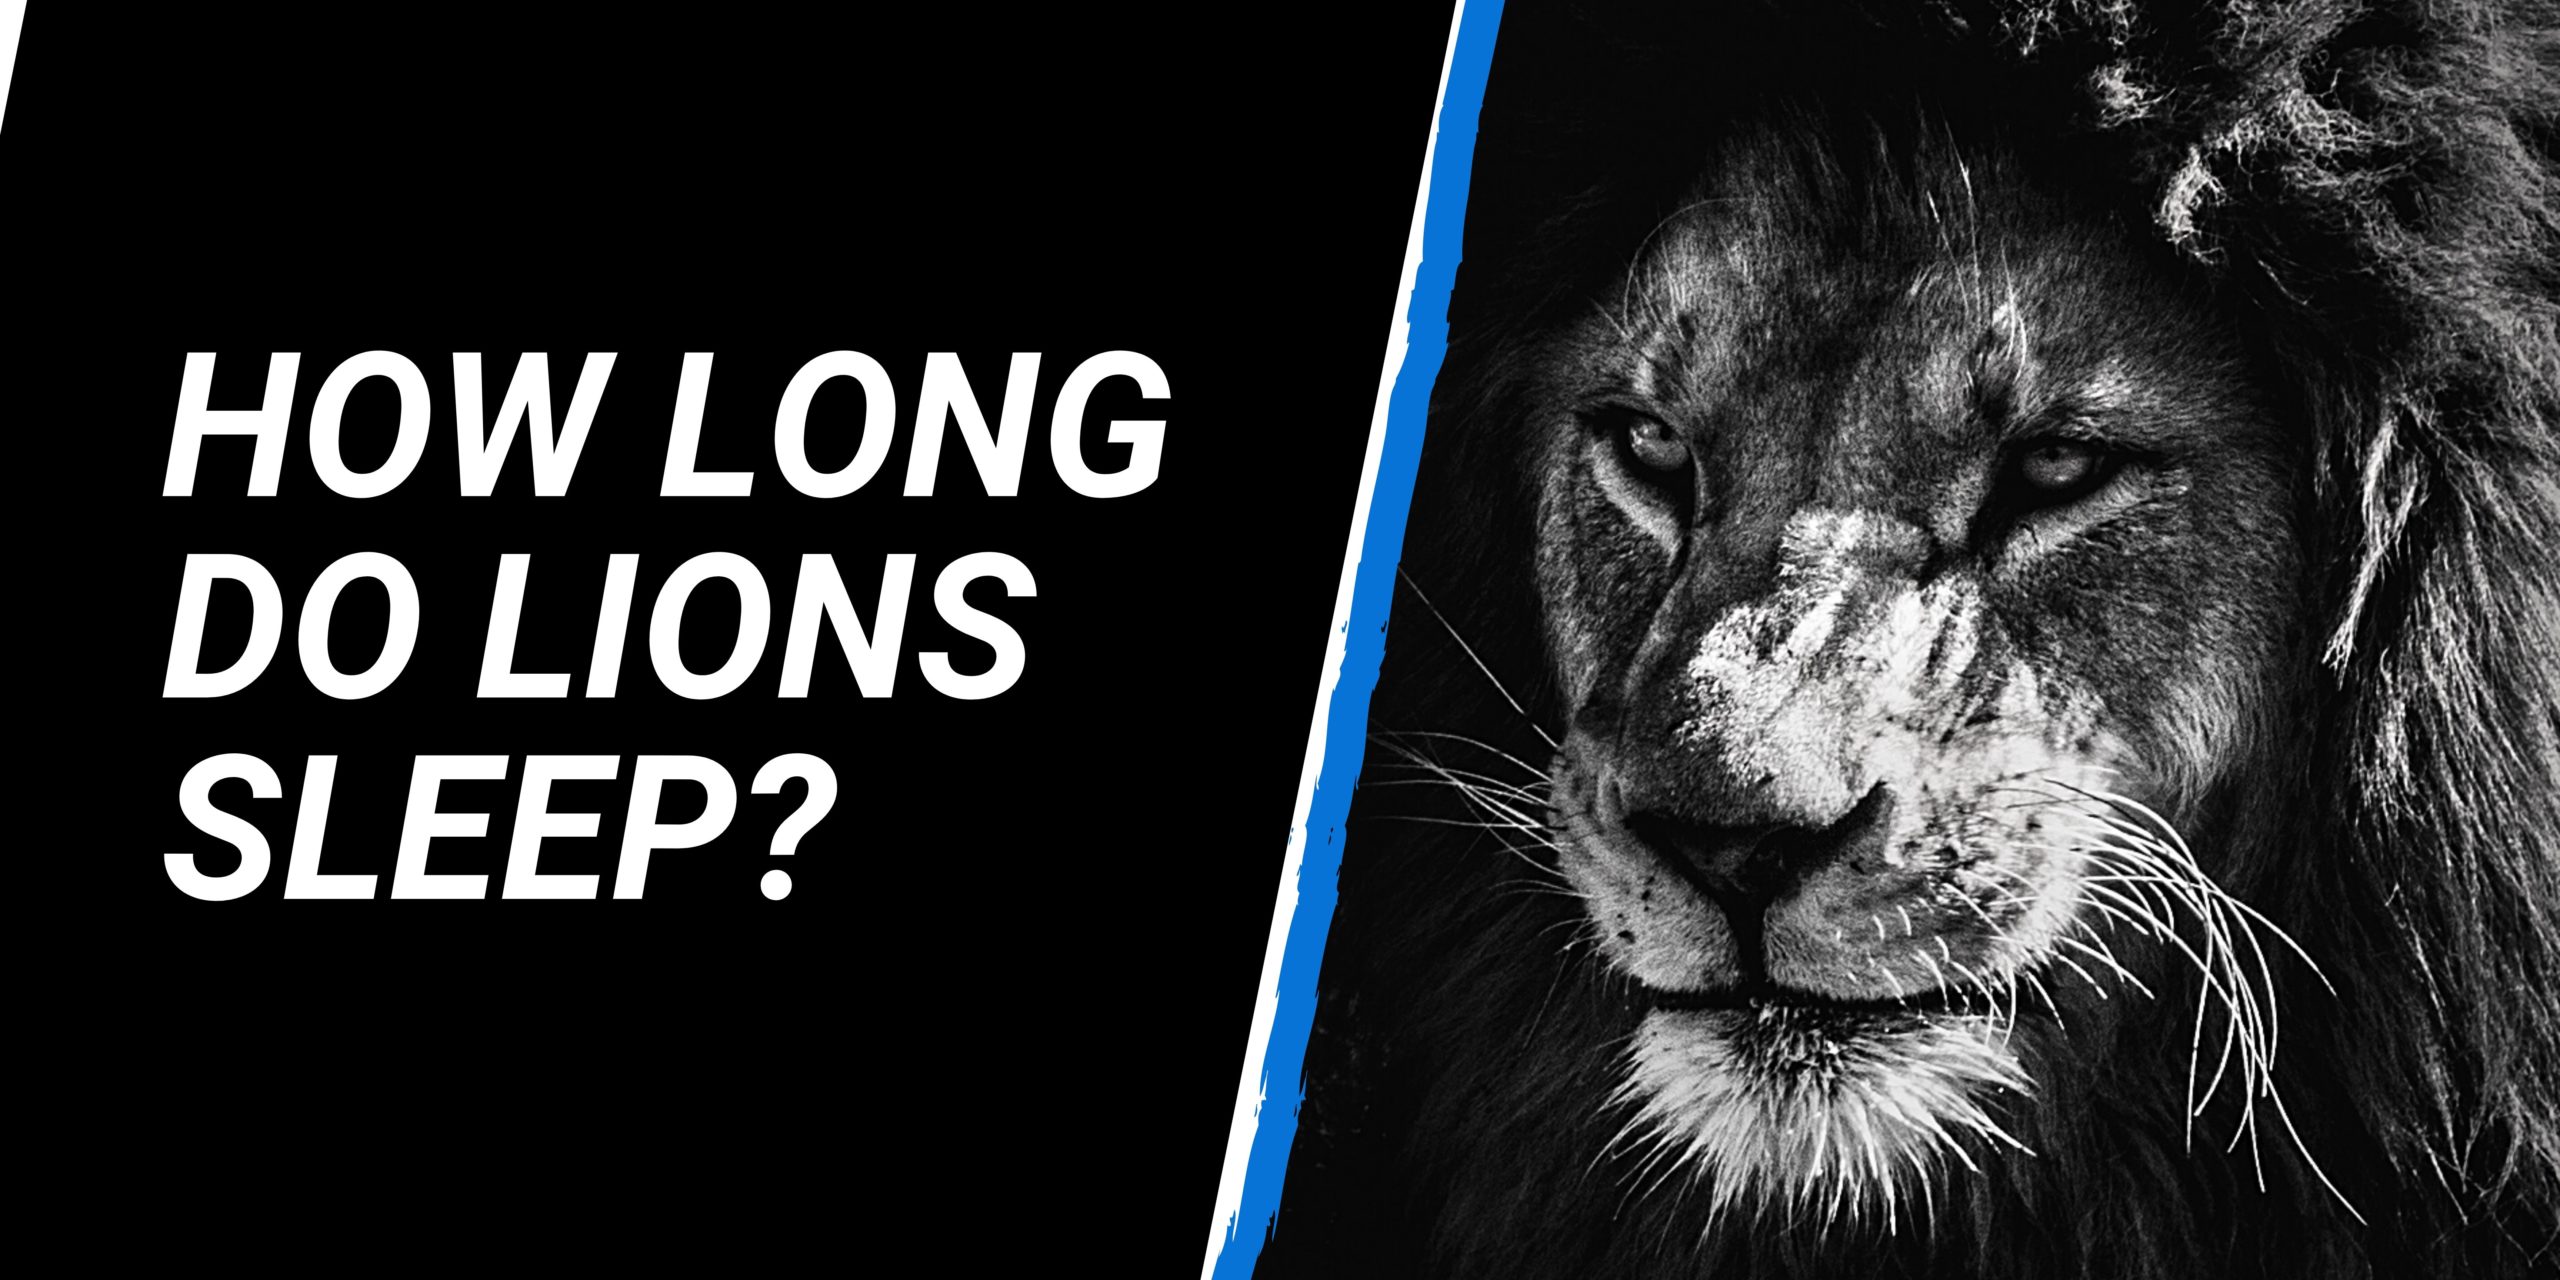 How long do lions sleep?